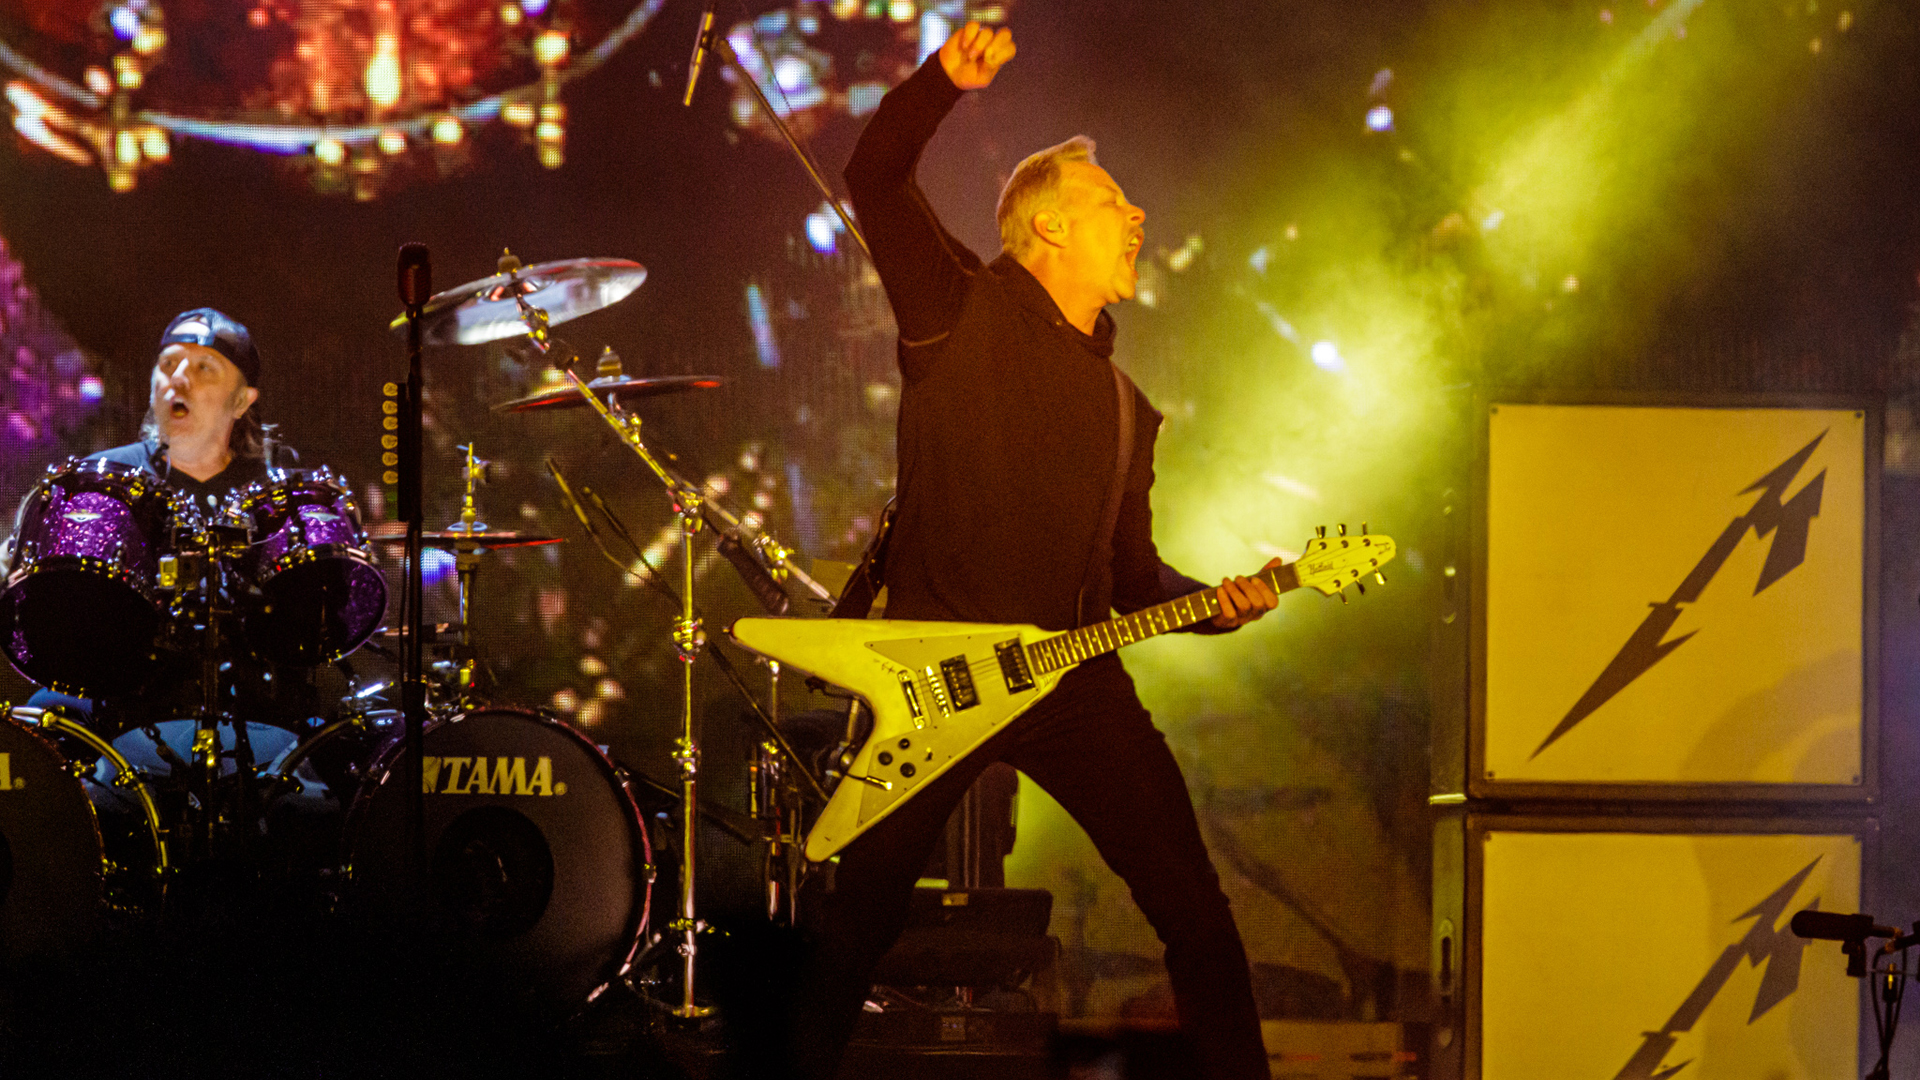 El show fue una celebración íntima entre los fans y Metallica por los 30 años del Black Álbum, uno de los discos más emblemáticos de la banda (Foto: Trigo Gerardi / Gentileza DF Entertainment)